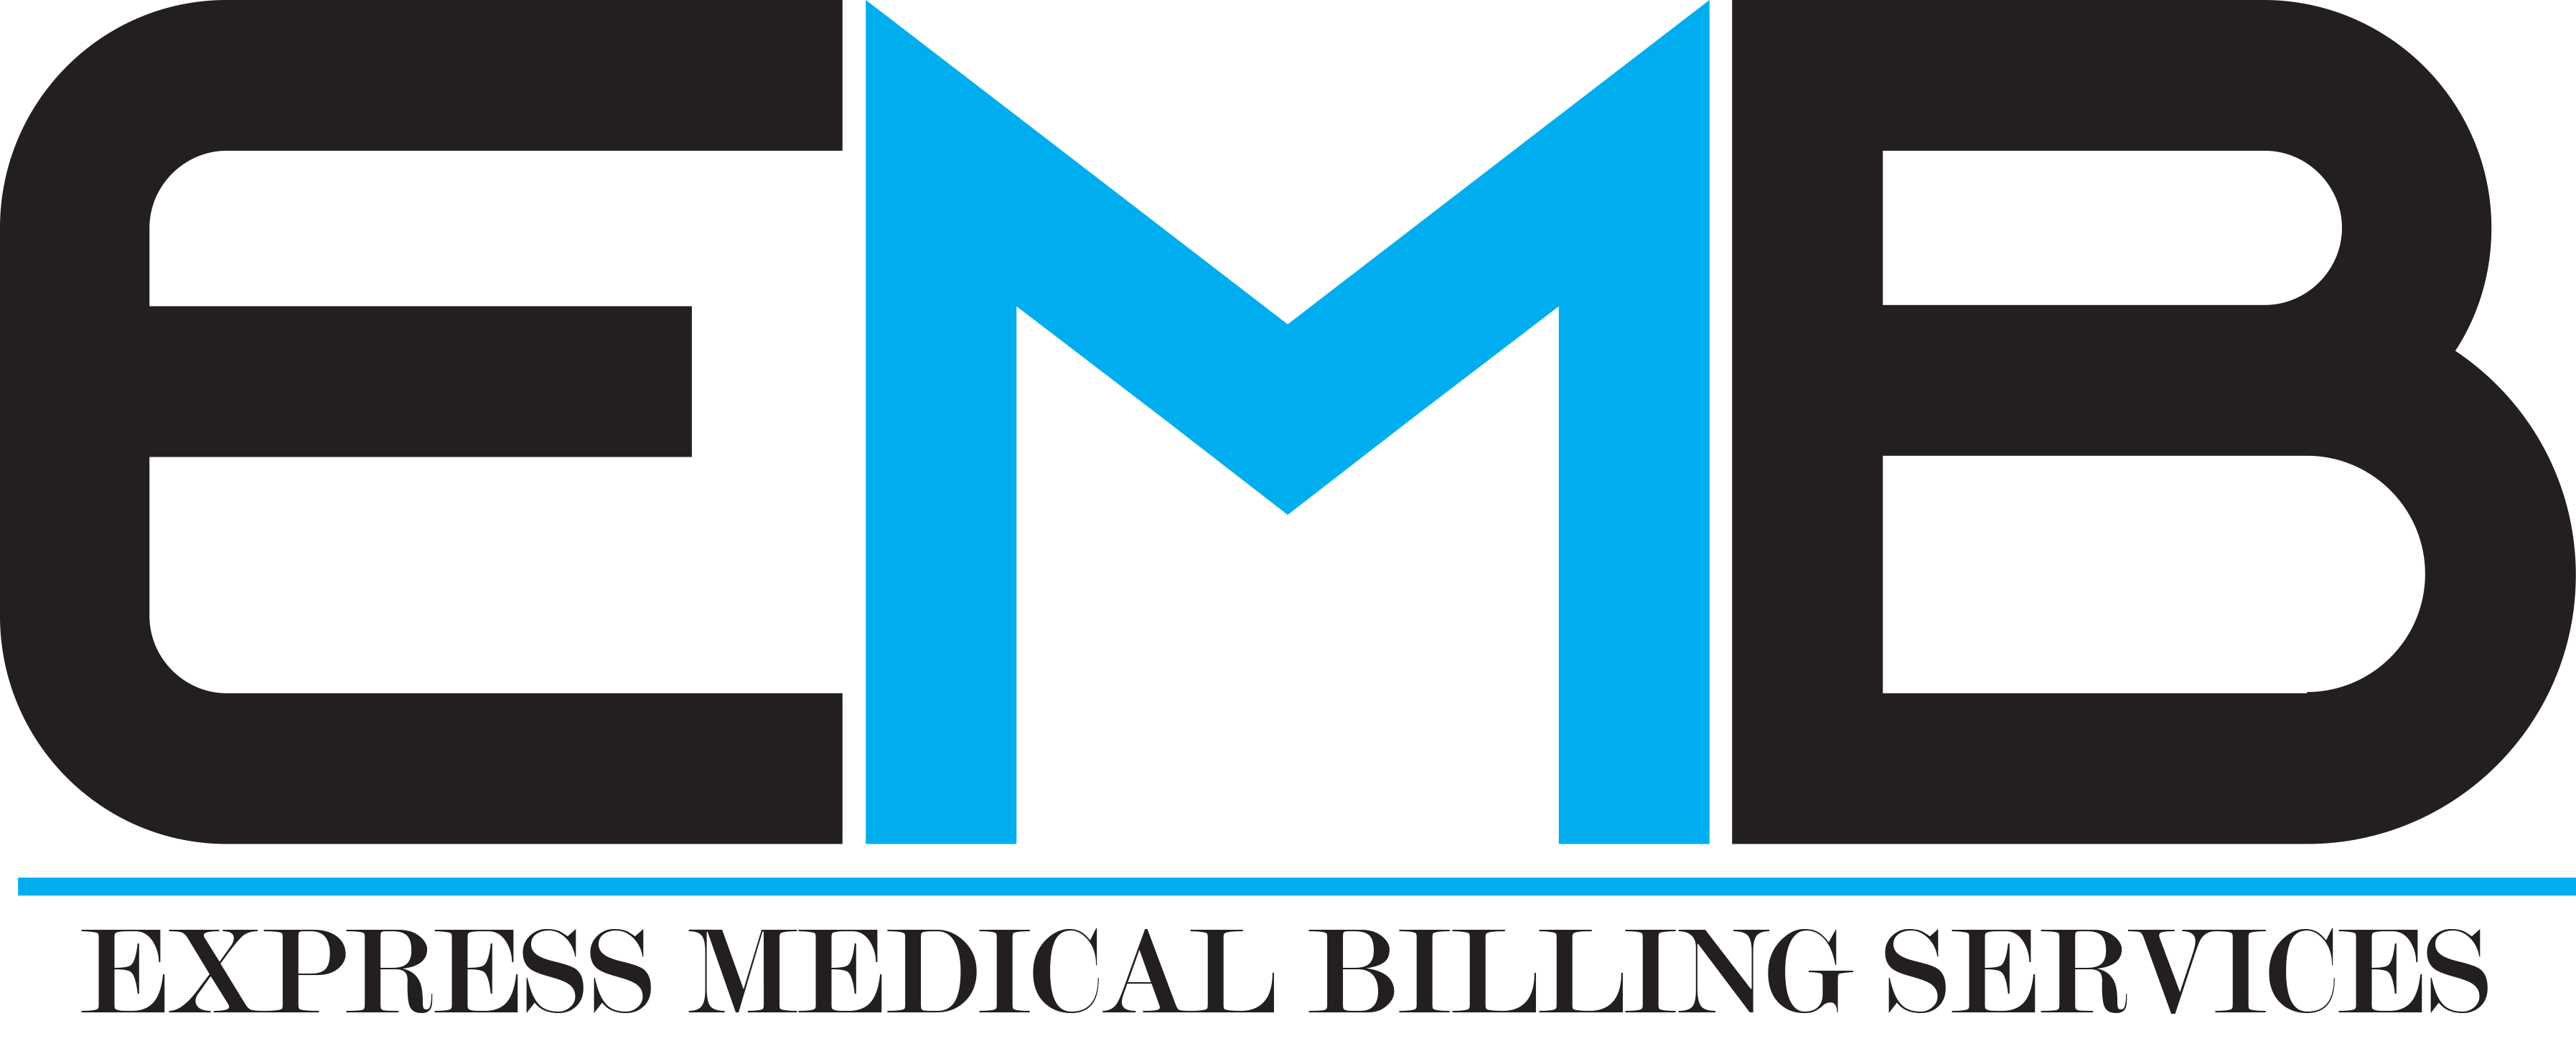 Express Medical Billing Services